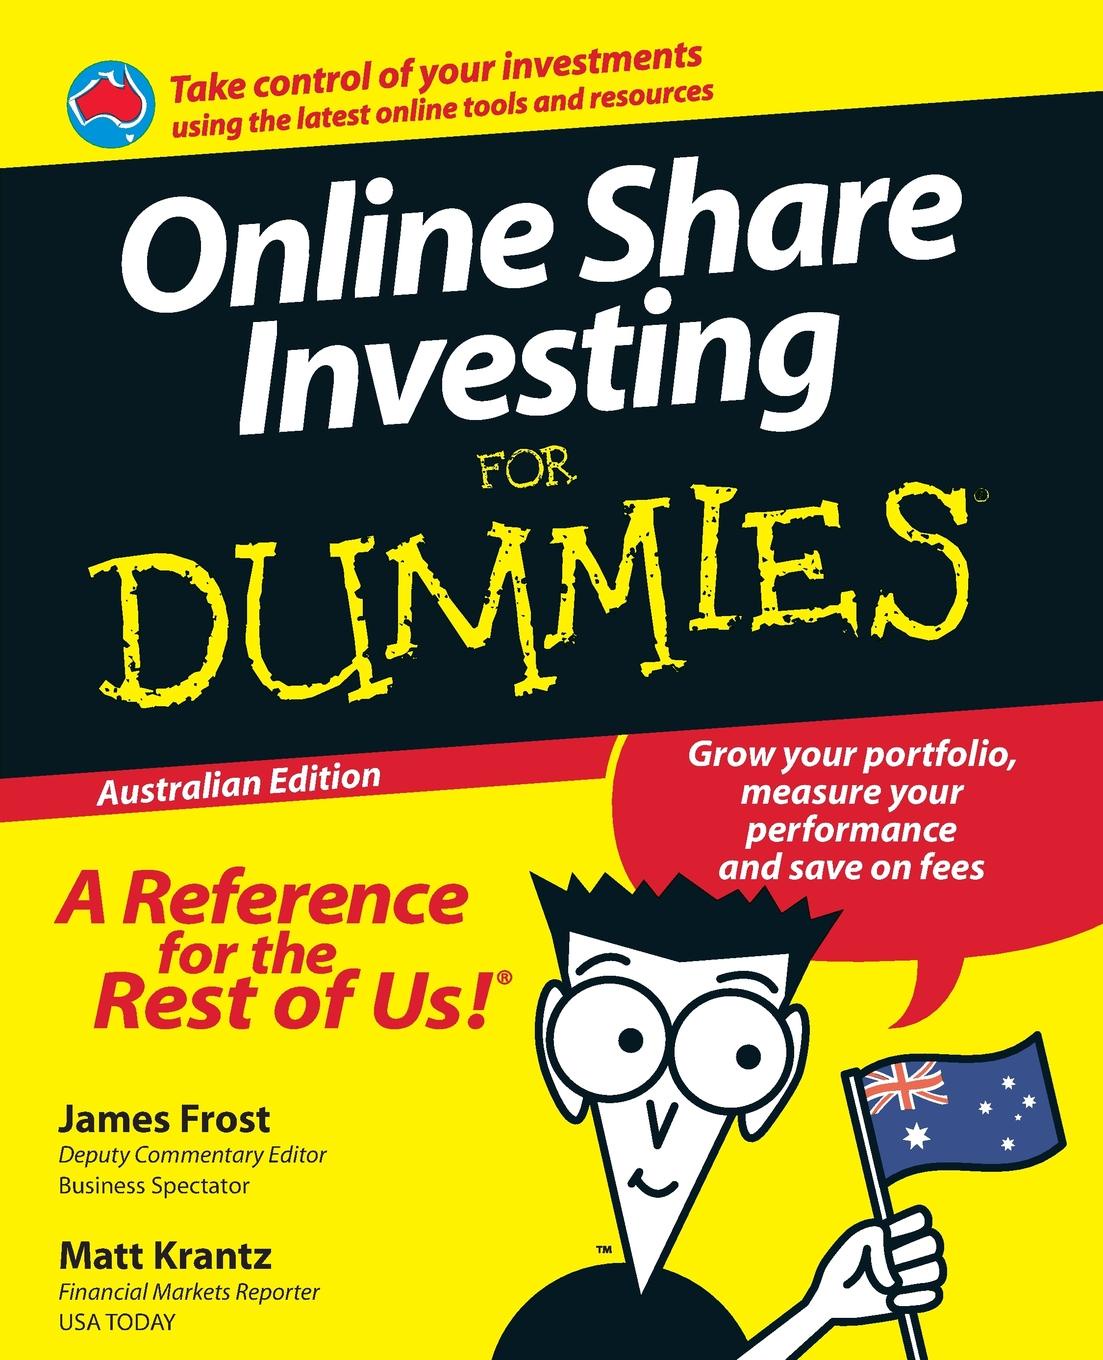 investing online for dummies matt krantz stock